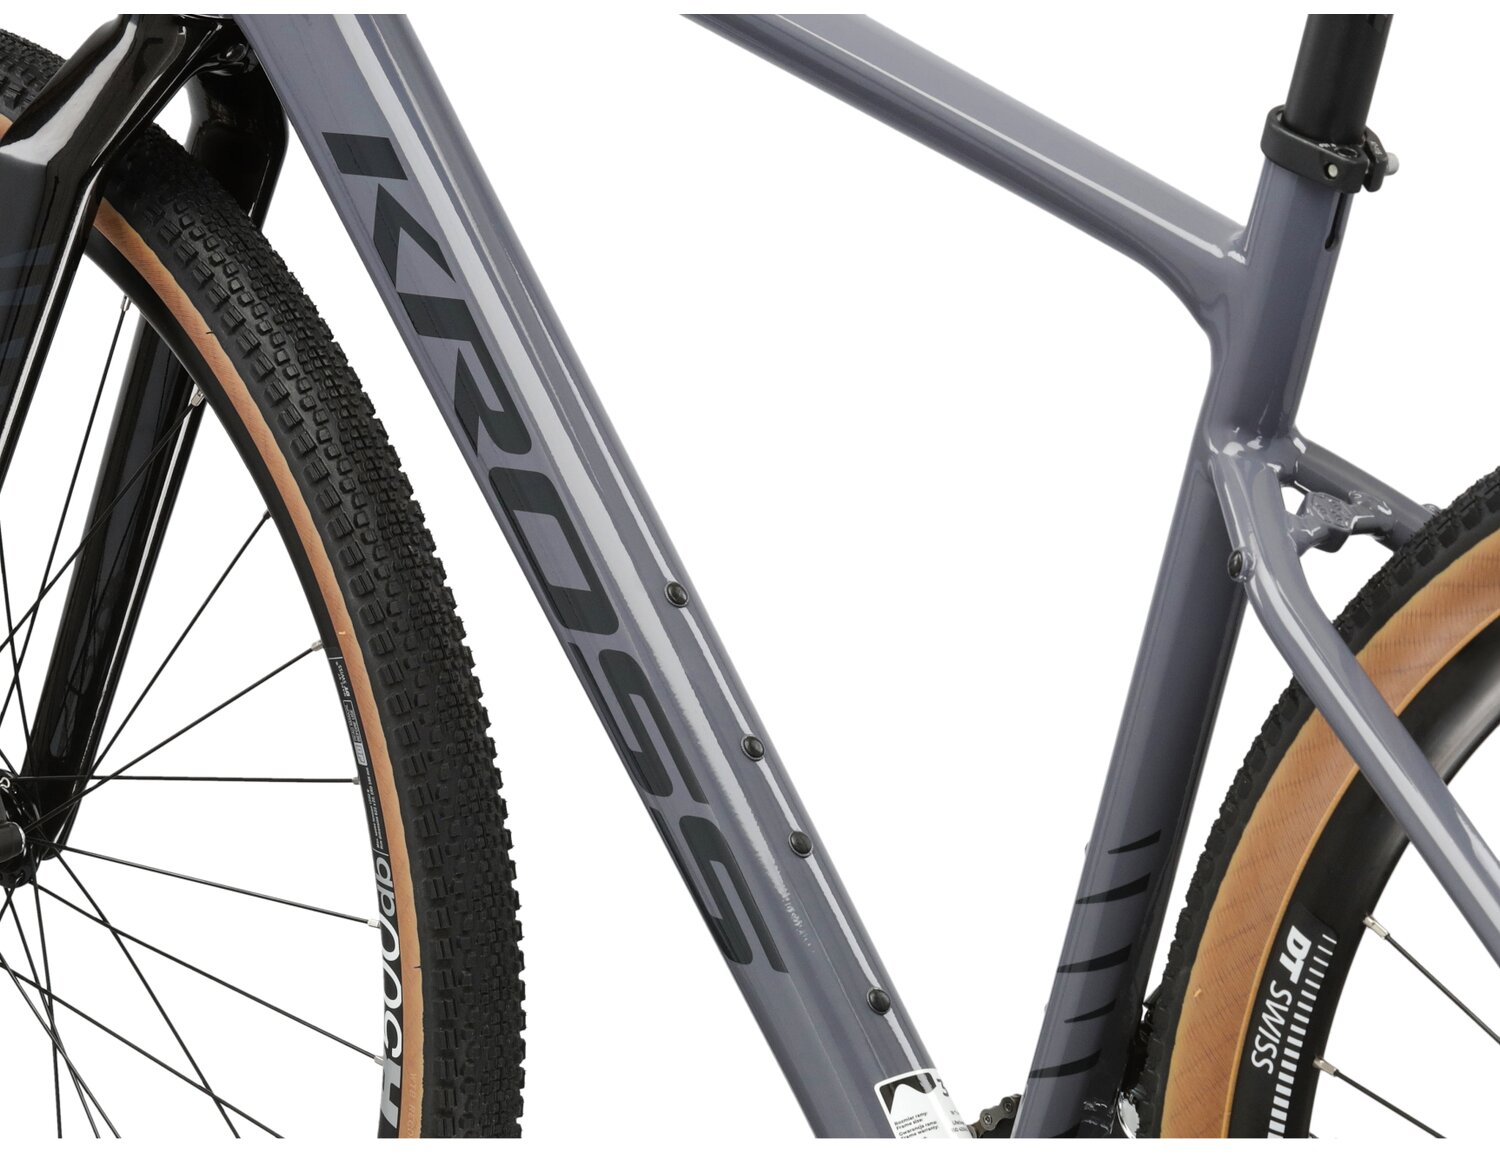  Aluminiowa rama w kolorze szarym, sztywny carbonowy widelec oraz opony WTB w rowerze gravelowym Kross Esker 5.0 